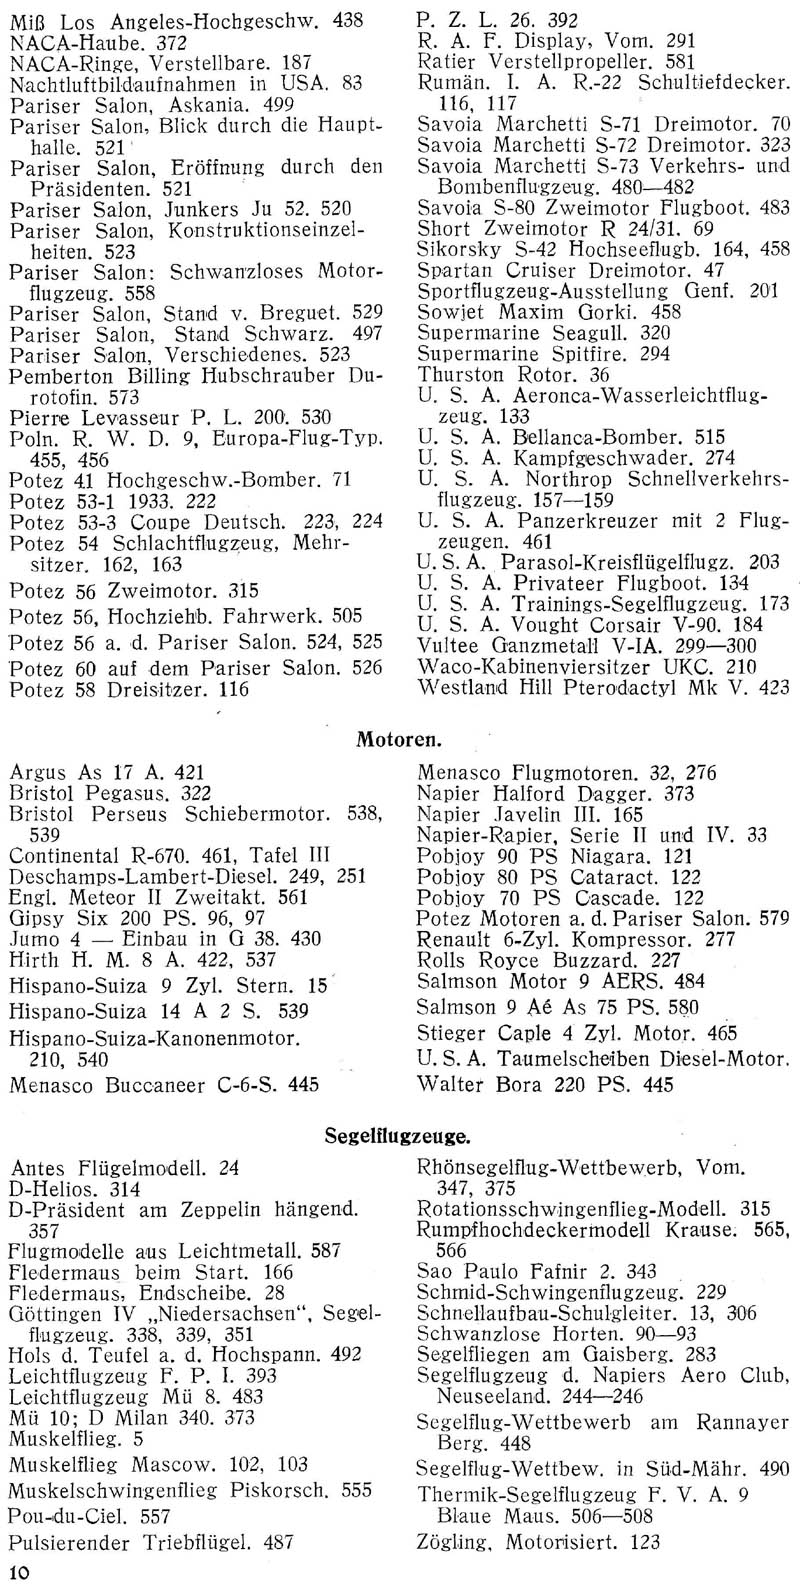 Sachregister und Inhaltsverzeichnis der Zeitschrift Flugsport für das Jahr 1934